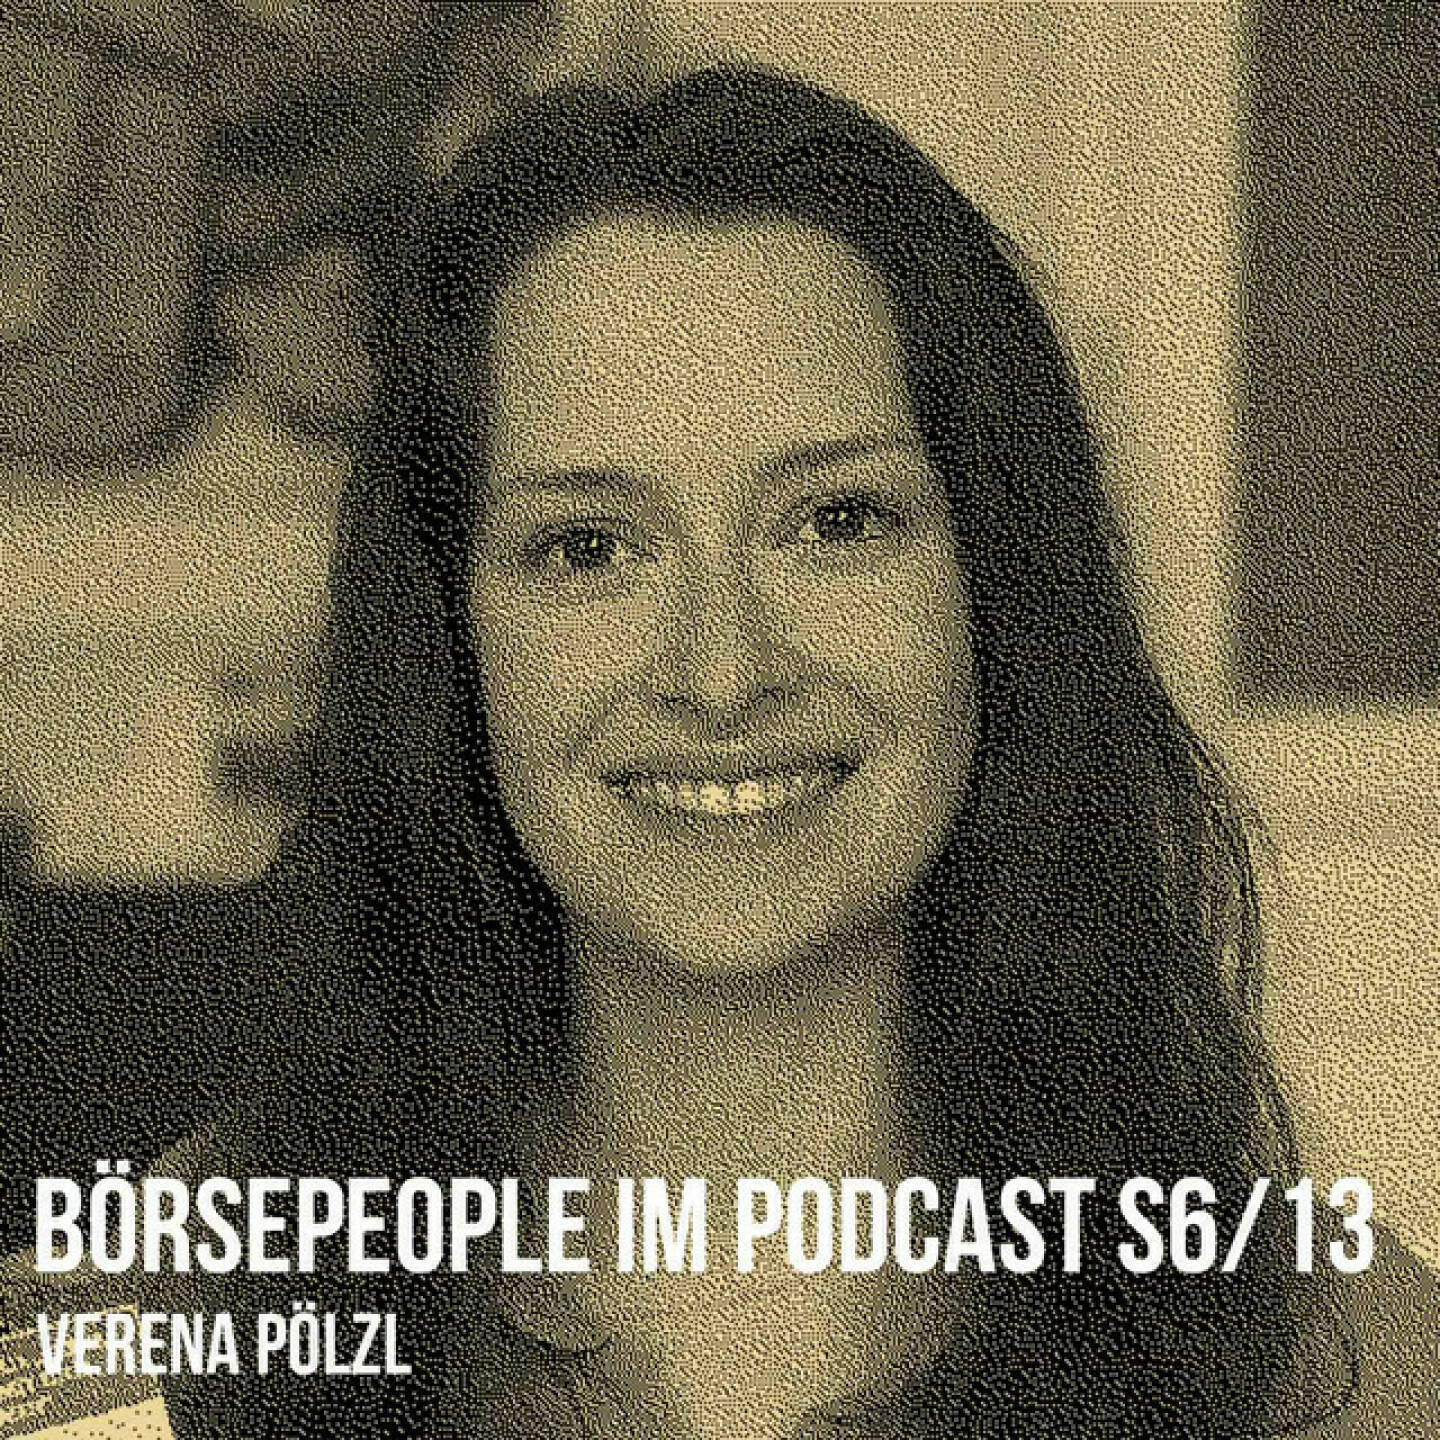 https://open.spotify.com/episode/7KTFQI1mH0KcGZNhlmxI9N
Börsepeople im Podcast S6/13: Verena Pölzl - <p>Verena Pölzl ist Projektmanagerin und Beraterin bei Nexxar, wir sprechen heute u.a. über digitale Geschäftsberichte aus Österreich und Deutschland. Am Beginn standen Internships bei Raiffeisen Lagerhaus, Medianet, Kronehit und Wiener Börse, es geht auch um die FH St. Pölten als Lernende sowie auch als Vortragende. Und natürlich um Nexxar, der Online-First-Player aus Wien gestaltete u.a. Geschäftsberichte für voestalpine, OMV, VIG, Lenzing, Uniqa oder Wienerberger, letzterer war Verenas Projekt und ist unser Muster-Case im Talk. Und auch international ist man erfolgreich, für den Boss-GB bekam Verena mehrere Preise. Und zum Schluss gab es einen Plauderlauf.<br/><br/><a href=https://www.nexxar.com target=_blank>https://www.nexxar.com</a><br/><br/>Wienerberger GB. <a href=https://geschaeftsbericht.wienerberger.com/2022/ target=_blank>https://geschaeftsbericht.wienerberger.com/2022/</a> <br/><br/>Boss GB: <a href=https://geschaeftsbericht-2022.hugoboss.com/ target=_blank>https://geschaeftsbericht-2022.hugoboss.com/</a><br/><br/>Rüdiger Landgraf, Robert Kleedorfer: &#34;Ziemlich gut veranlagt&#34;: <a href=https://kurier.at/podcasts/ziemlichgutveranlagt/ziemlich-gut-veranlagt-der-finanzpodcast/401803327 target=_blank>https://kurier.at/podcasts/ziemlichgutveranlagt/ziemlich-gut-veranlagt-der-finanzpodcast/401803327</a><br/><br/>Plauderlauf: <a href=https://photaq.com/page/pic/94592/ target=_blank>https://photaq.com/page/pic/94592/</a><br/><br/>About: Die Serie Börsepeople findet im Rahmen von <a href=http://www.audio-cd.at target=_blank>http://www.audio-cd.at</a> und dem Podcast &#34;Audio-CD.at Indie Podcasts&#34; statt. Es handelt sich dabei um typische Personality- und Werdegang-Gespräche. Die Season 6 umfasst unter dem Motto „23 Börsepeople“ wieder 23 Talks  Presenter der Season 6 ist saisongerecht 6b47, <a href=https://6b47.com/de/home target=_blank>https://6b47.com/de/home</a> . Welcher der meistgehörte Börsepeople Podcast ist, sieht man unter <a href=http://www.audio-cd.at/people target=_blank>http://www.audio-cd.at/people.</a> Nach den ersten drei Seasons führte Thomas Tschol und gewann dafür einen Number One Award für 2022. Der Zwischenstand des laufenden Rankings ist tagesaktuell um 12 Uhr aktualisiert.<br/><br/>Bewertungen bei Apple (oder auch Spotify) machen mir Freude: <a href=https://podcasts.apple.com/at/podcast/audio-cd-at-indie-podcasts-wiener-boerse-sport-musik-und-mehr/id1484919130 target=_blank>https://podcasts.apple.com/at/podcast/audio-cd-at-indie-podcasts-wiener-boerse-sport-musik-und-mehr/id1484919130</a> .</p>